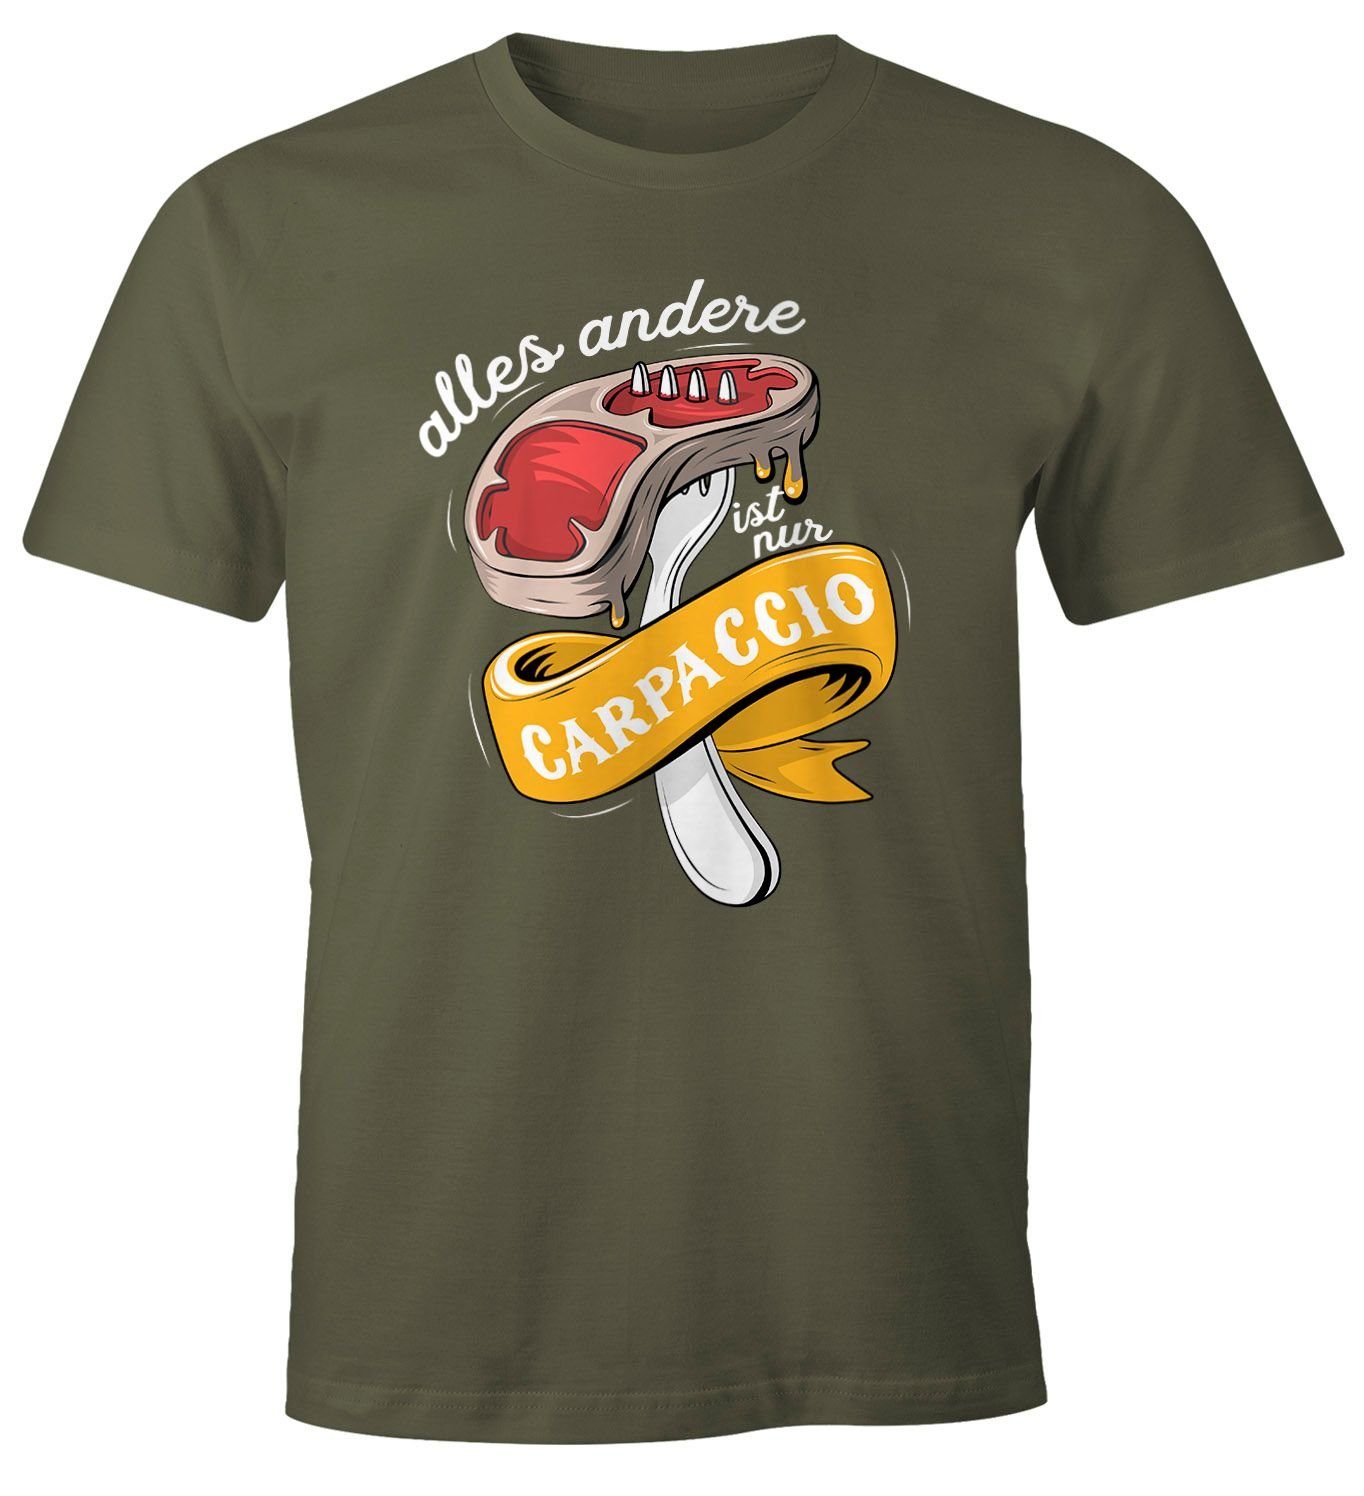 MoonWorks Print-Shirt Herren T-Shirt alles andere ist nur Carpaccio Grillen Barbecue BBQ Fleisch Fun-Shirt Moonworks® mit Print grün